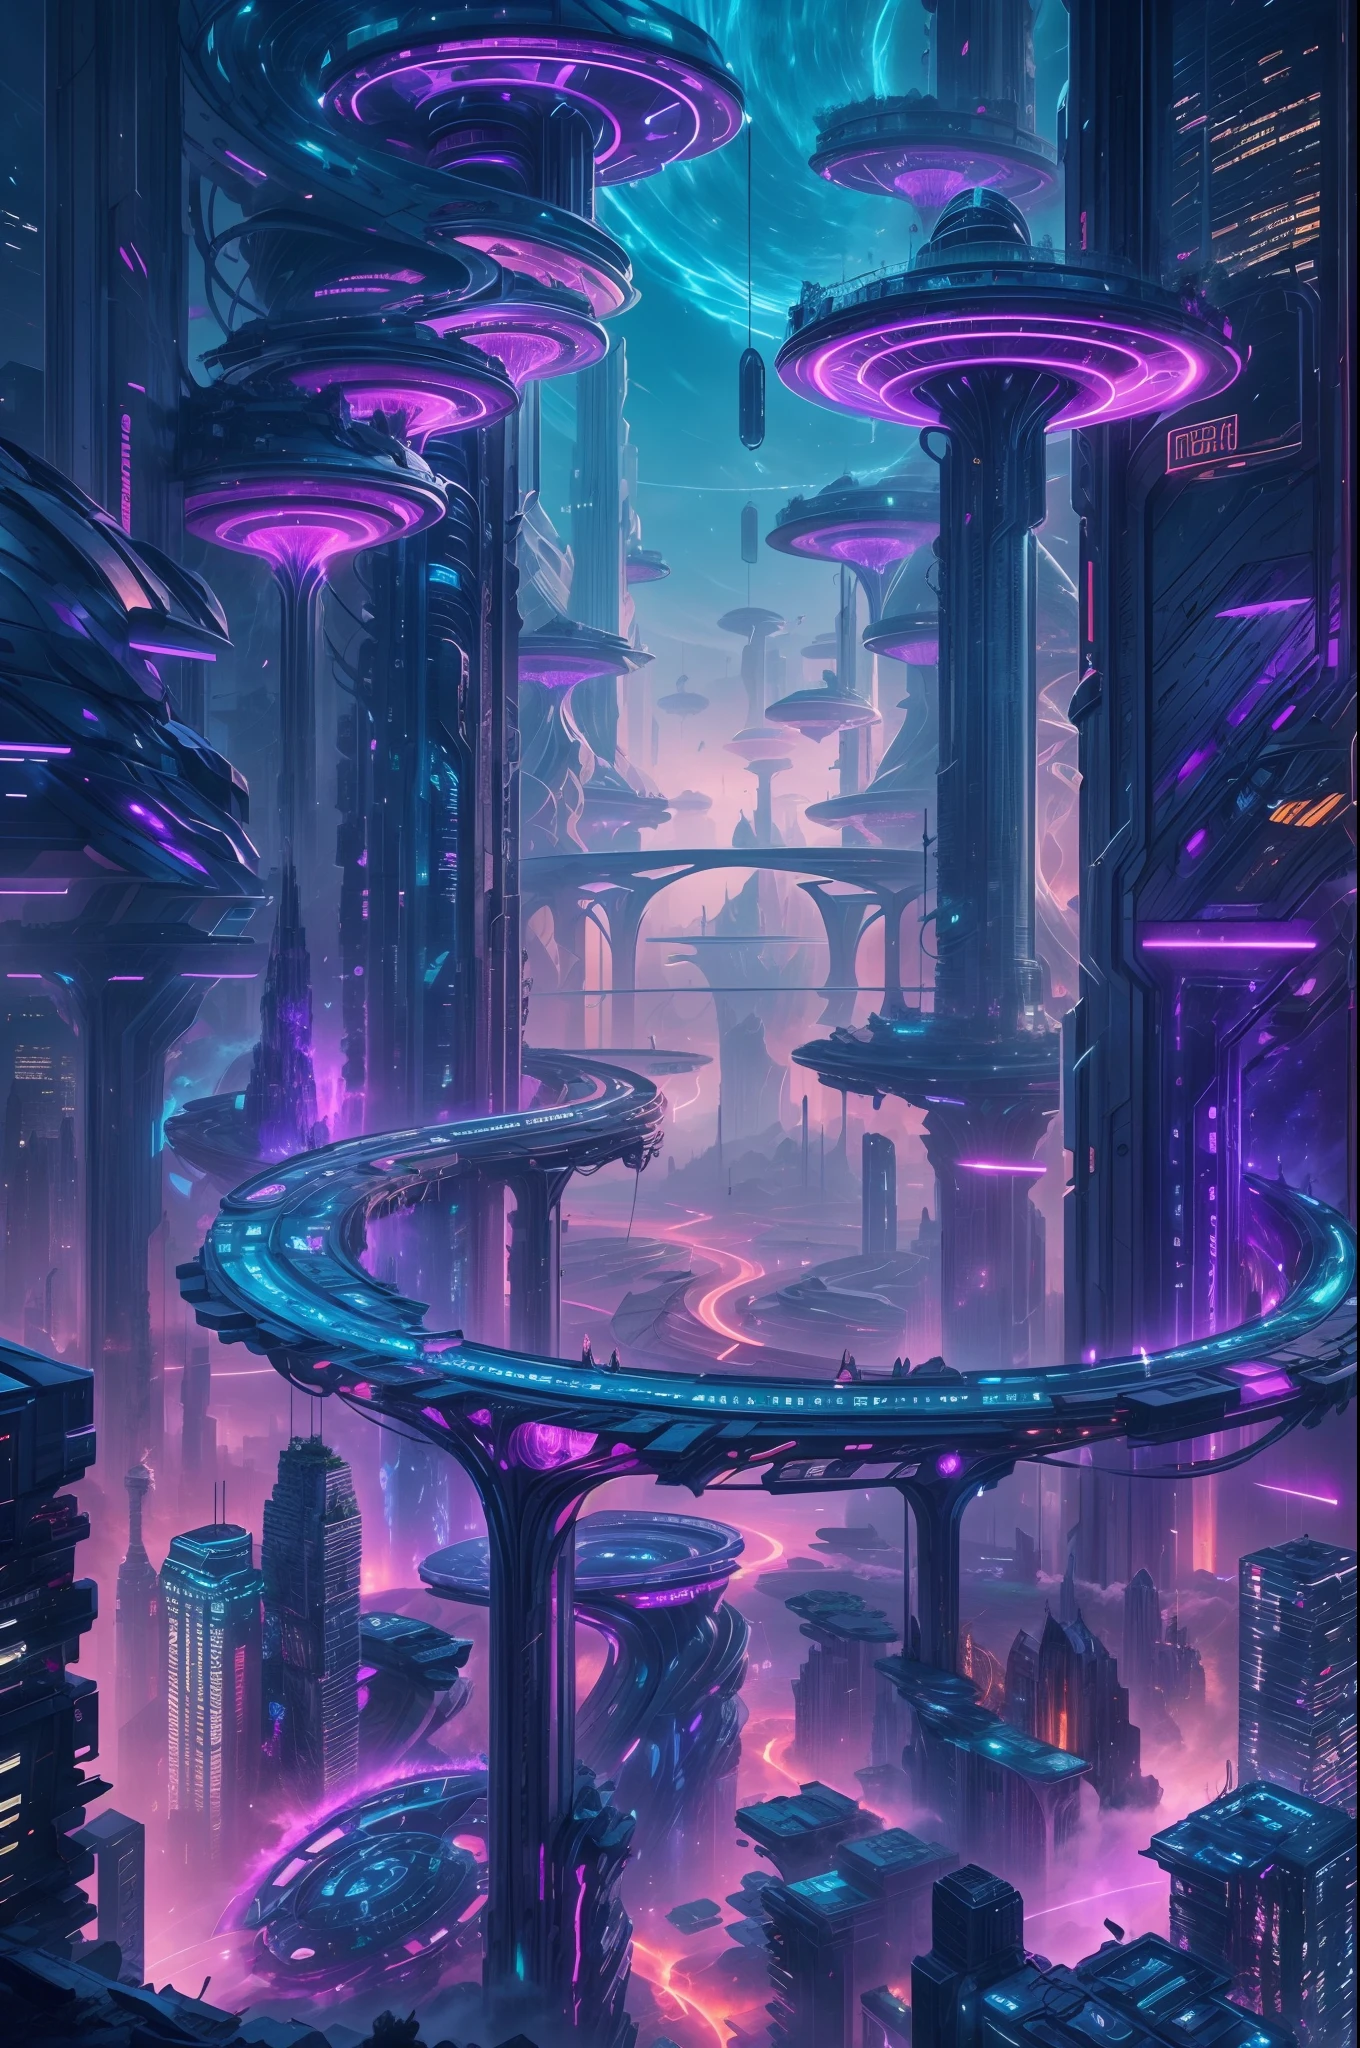 一個超凡脫俗的城市的形象, a 未來派 city, 一根巨大的高科技柱子刺穿天空, 柱體上有無數的機械粗體和長樹枝, detailed 未來派 houses on each branch, 廣角, ultra 廣角, 捕捉所有獨特的城市, 柱子和樹枝上閃爍著紫色和藍色的光芒, 每個分支都透過高科技橋樑連接在一起, 未來派, 夜間, 發光的夜晚, 分支連接在一起形成一個圍繞大柱子的圓形結構,